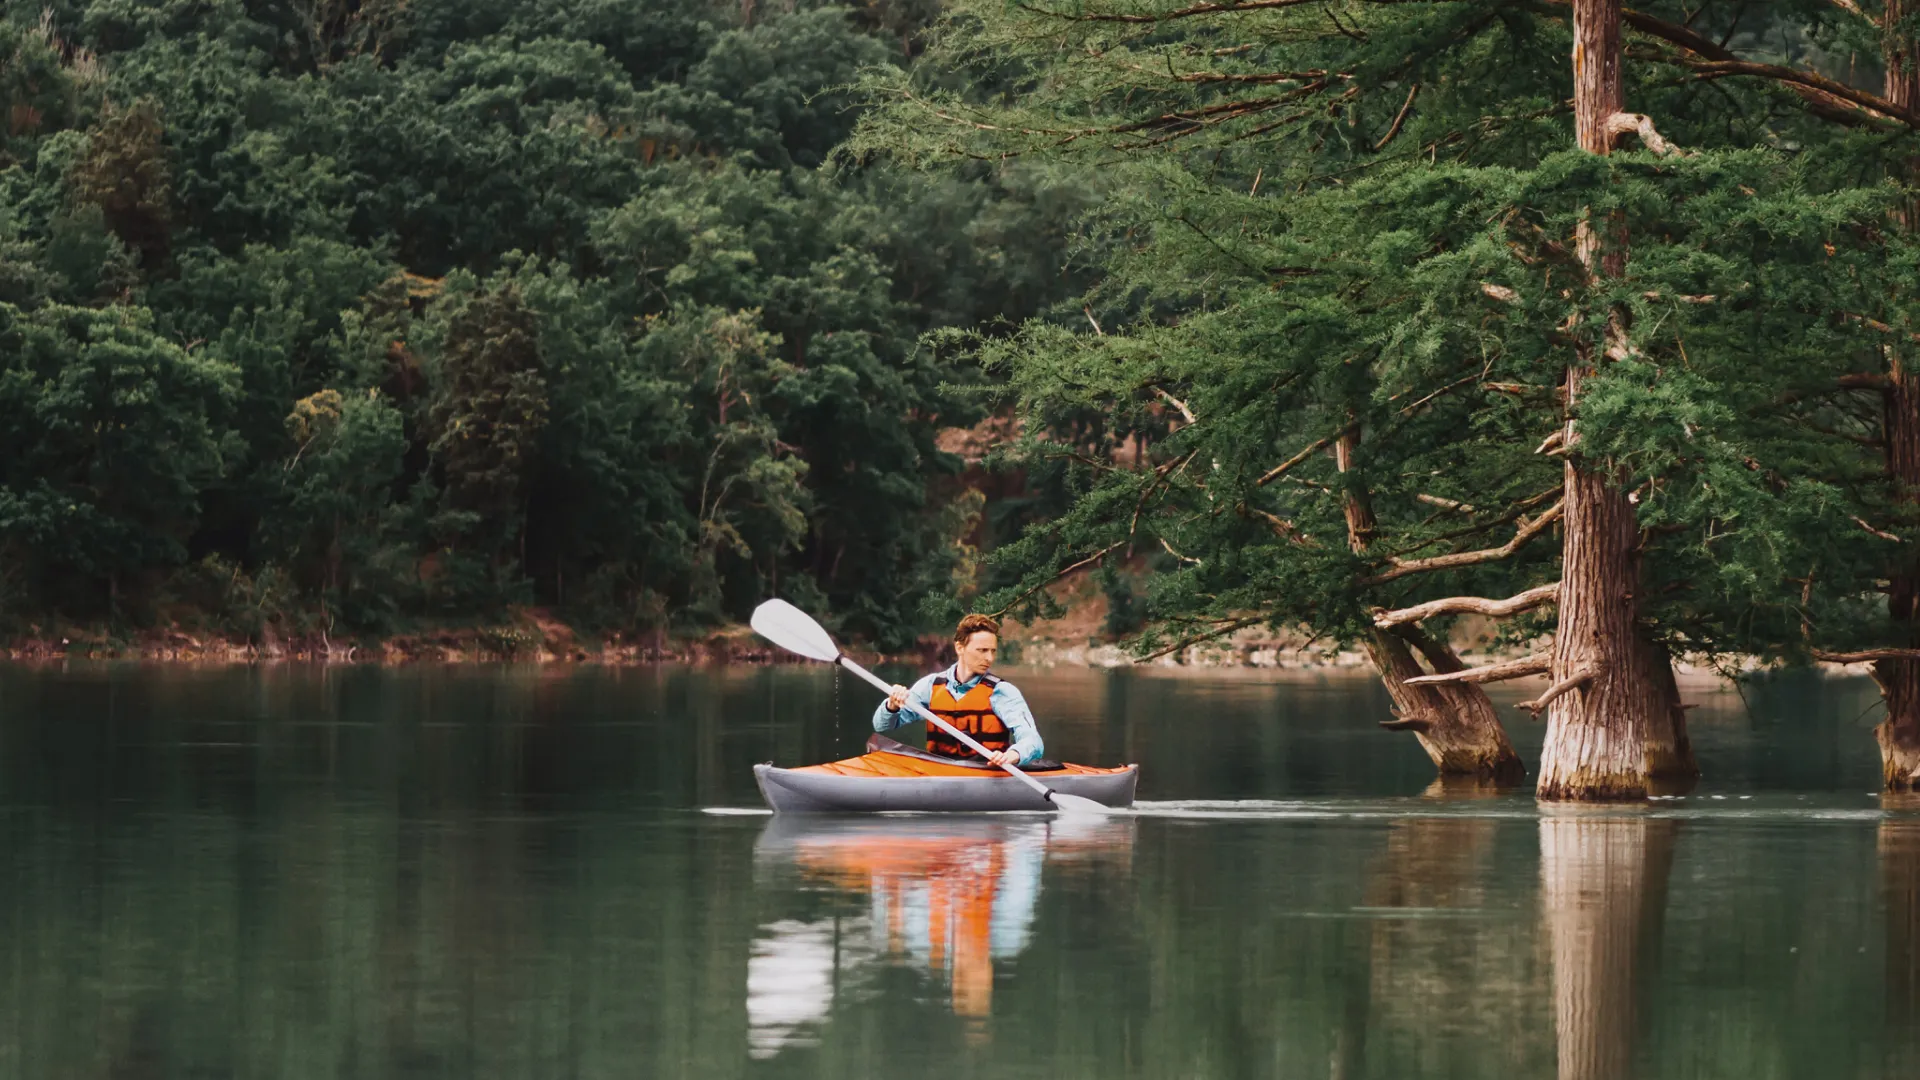 мужчина на лодке в озере среди кипарисов